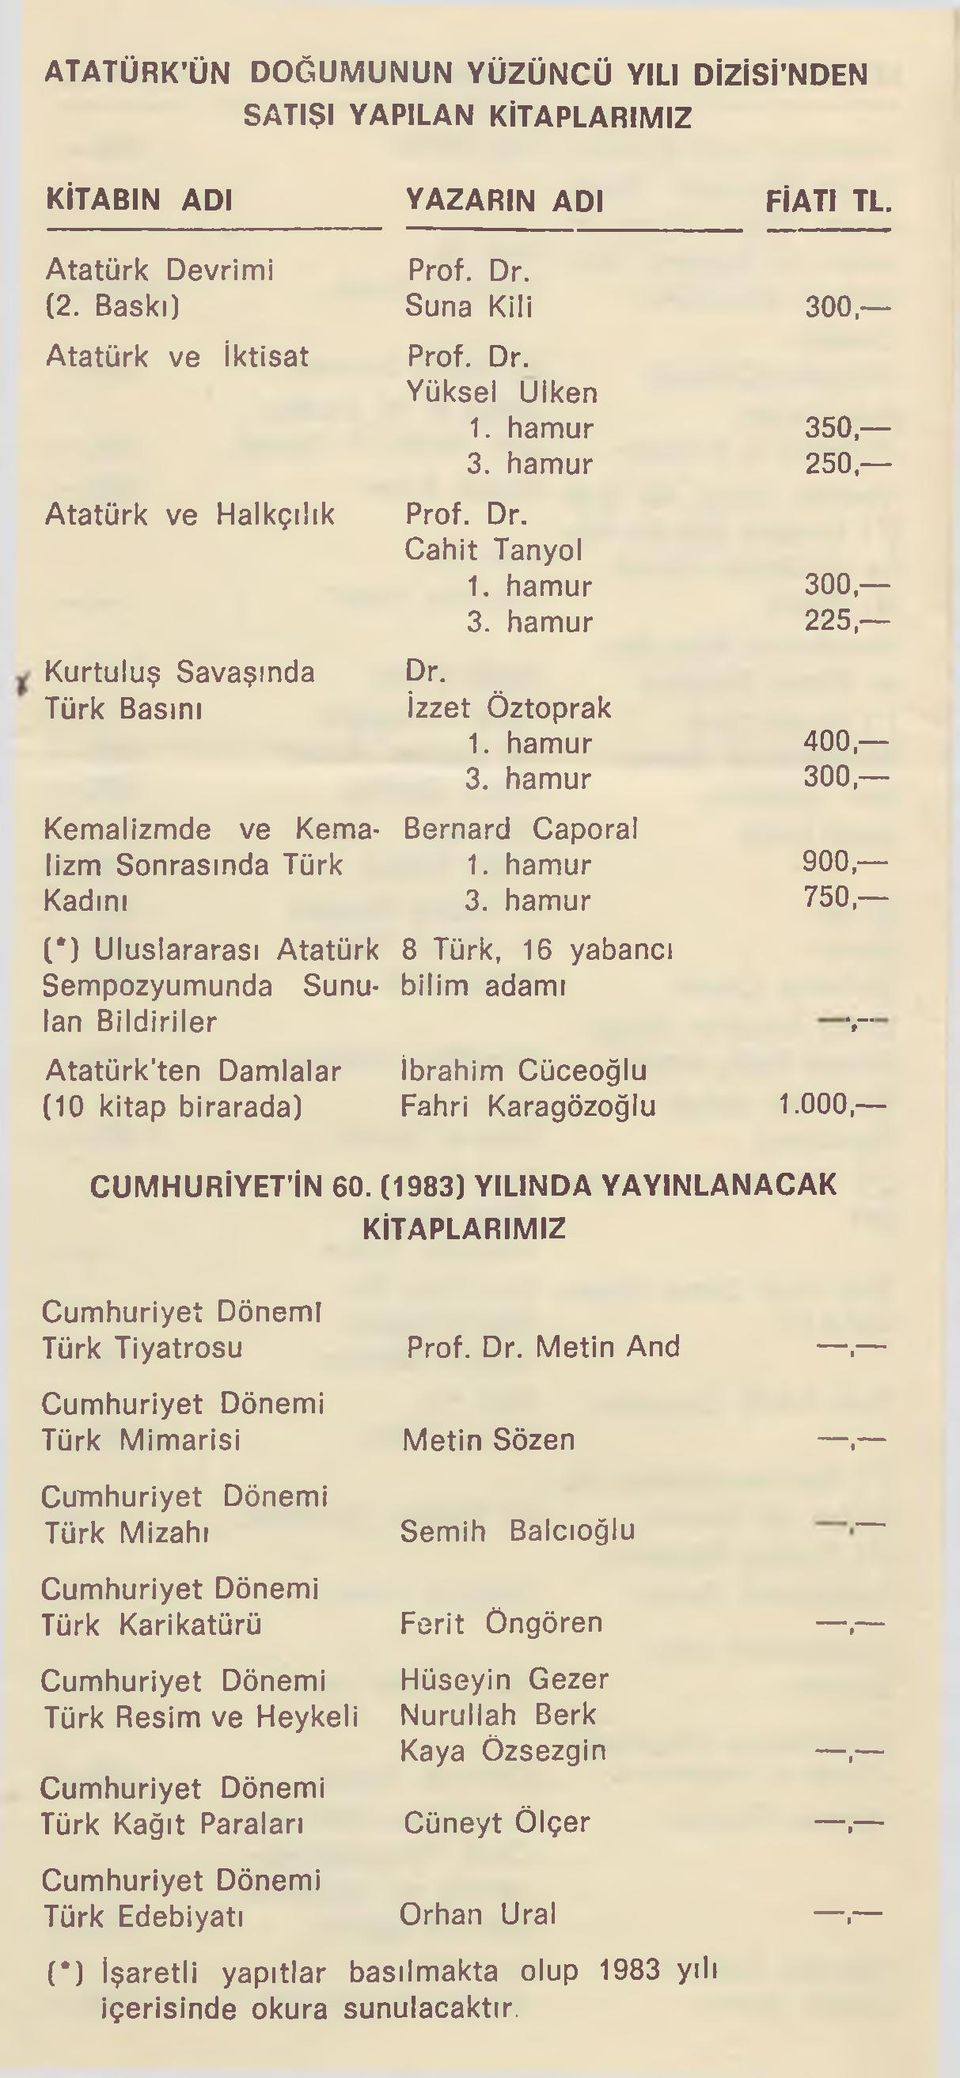 hamur 3. hamur 300, Kemalizmde ve Kema- Bernard Caporal lizm Sonrasında Türk 1. hamur 900, Kadını 3. hamur 750, (*) Uluslararası Atatürk 8 Türk.